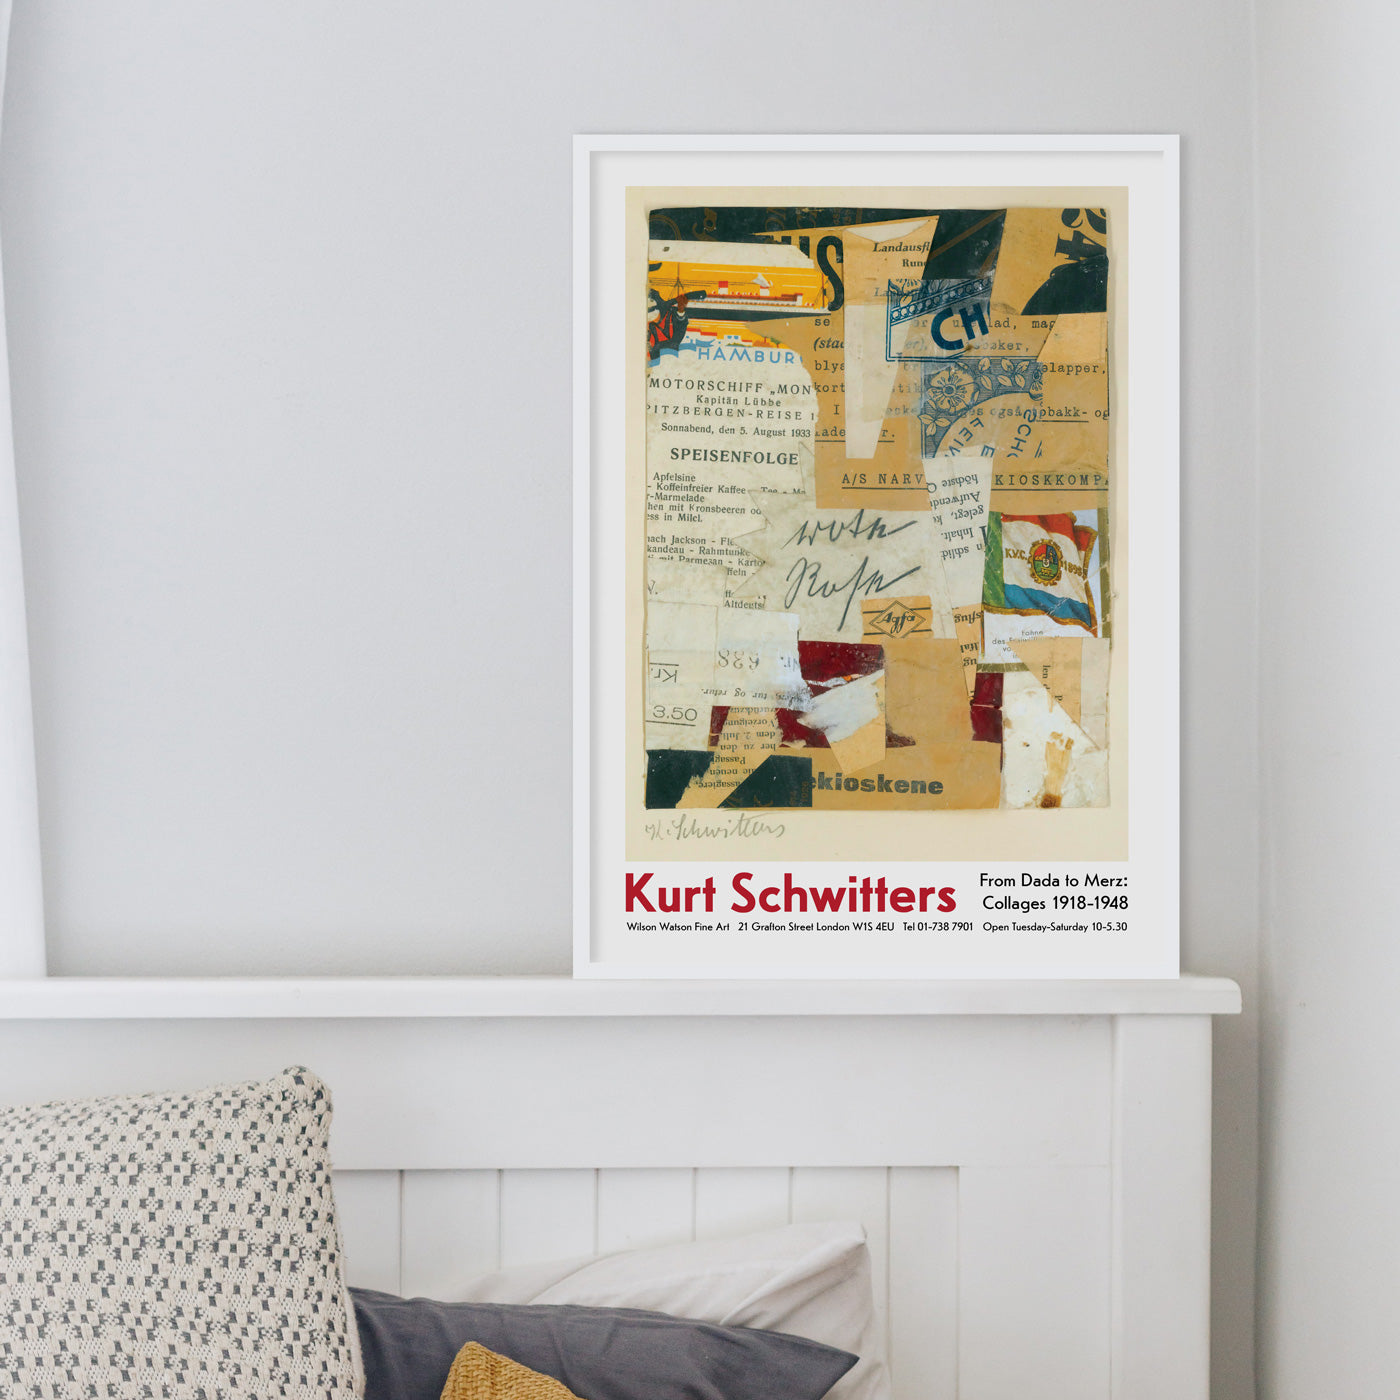 Kurt Schwitters Exhibition Poster